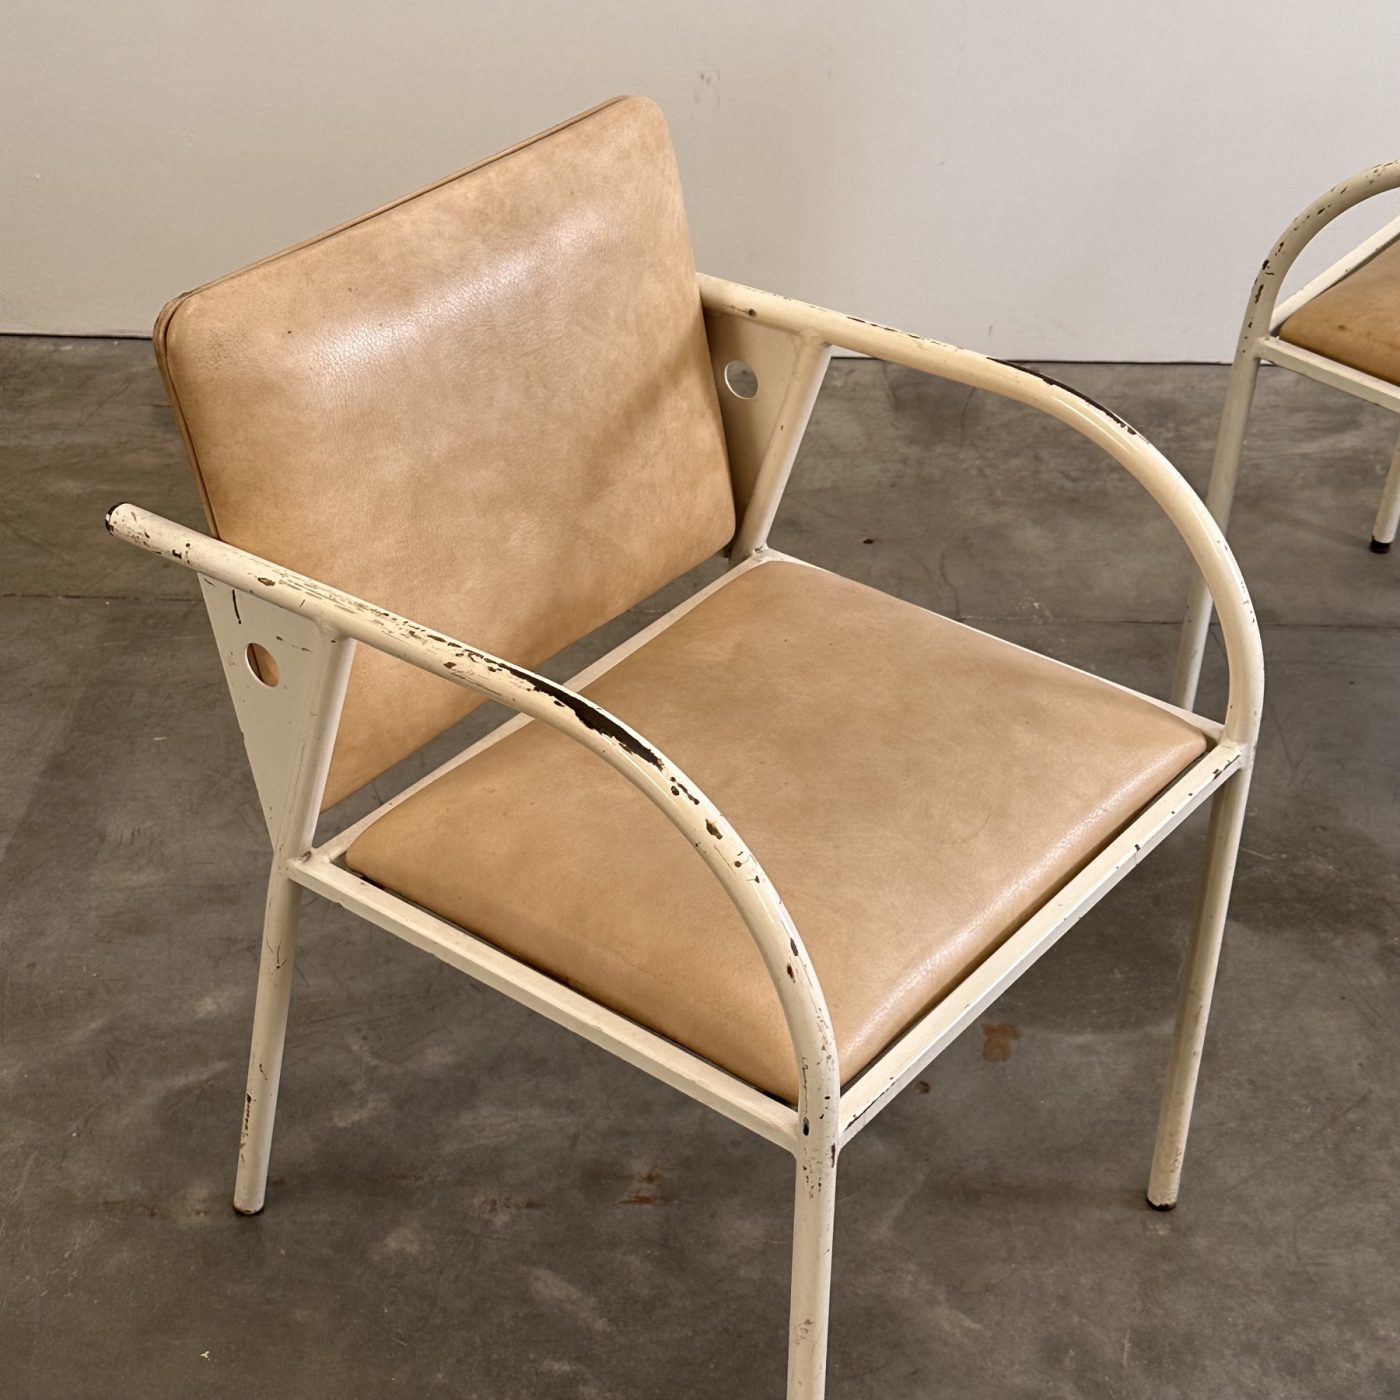 objet-vagabond-metal-armchairs0004